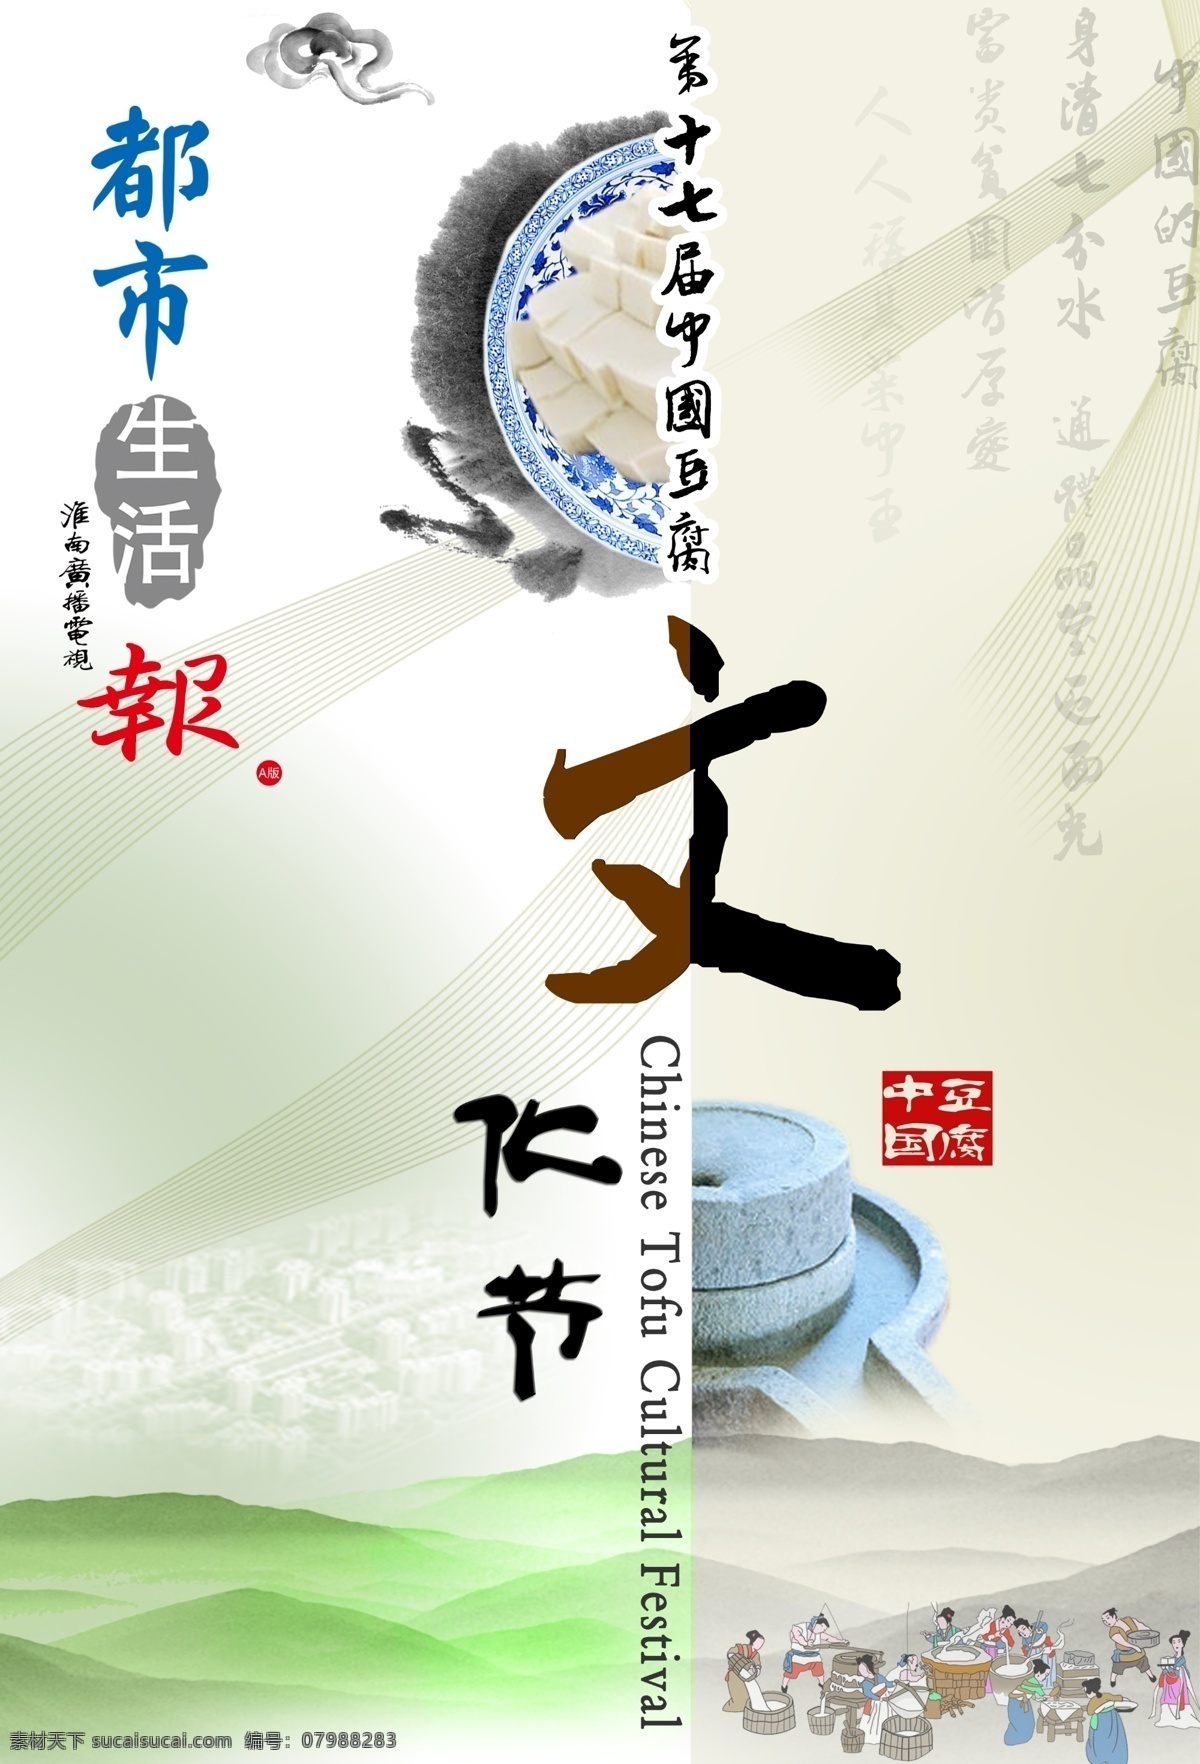 中国 十 七 届 豆腐 文化节 第十七届 山 画册设计 广告设计模板 源文件